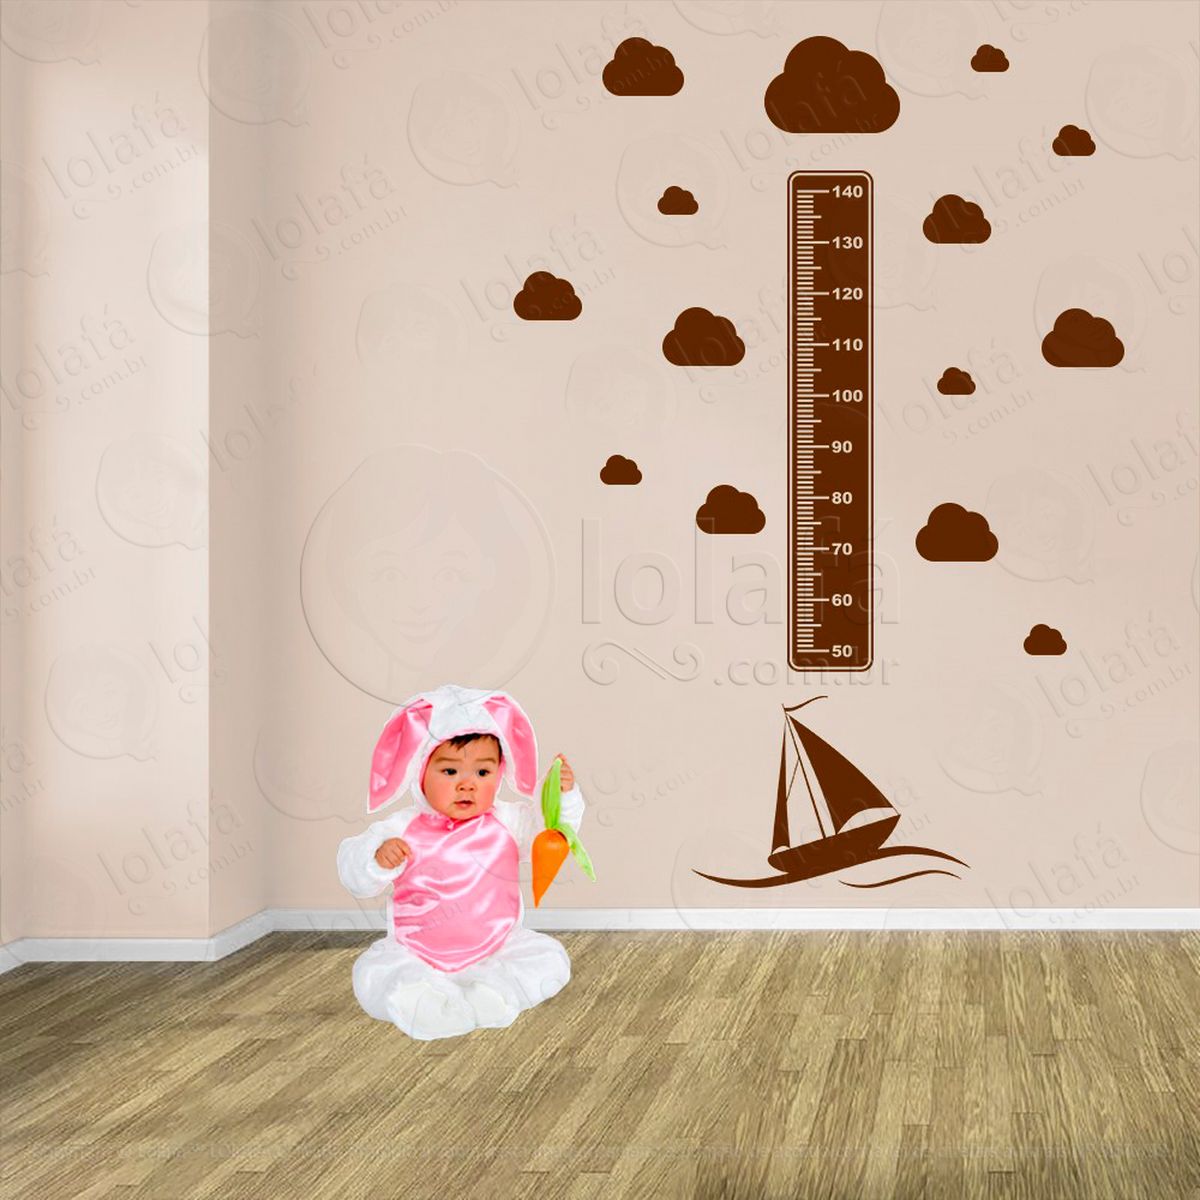 barco e nuvens adesivo régua de crescimento infantil, medidor de altura para quarto, porta e parede - mod:1134